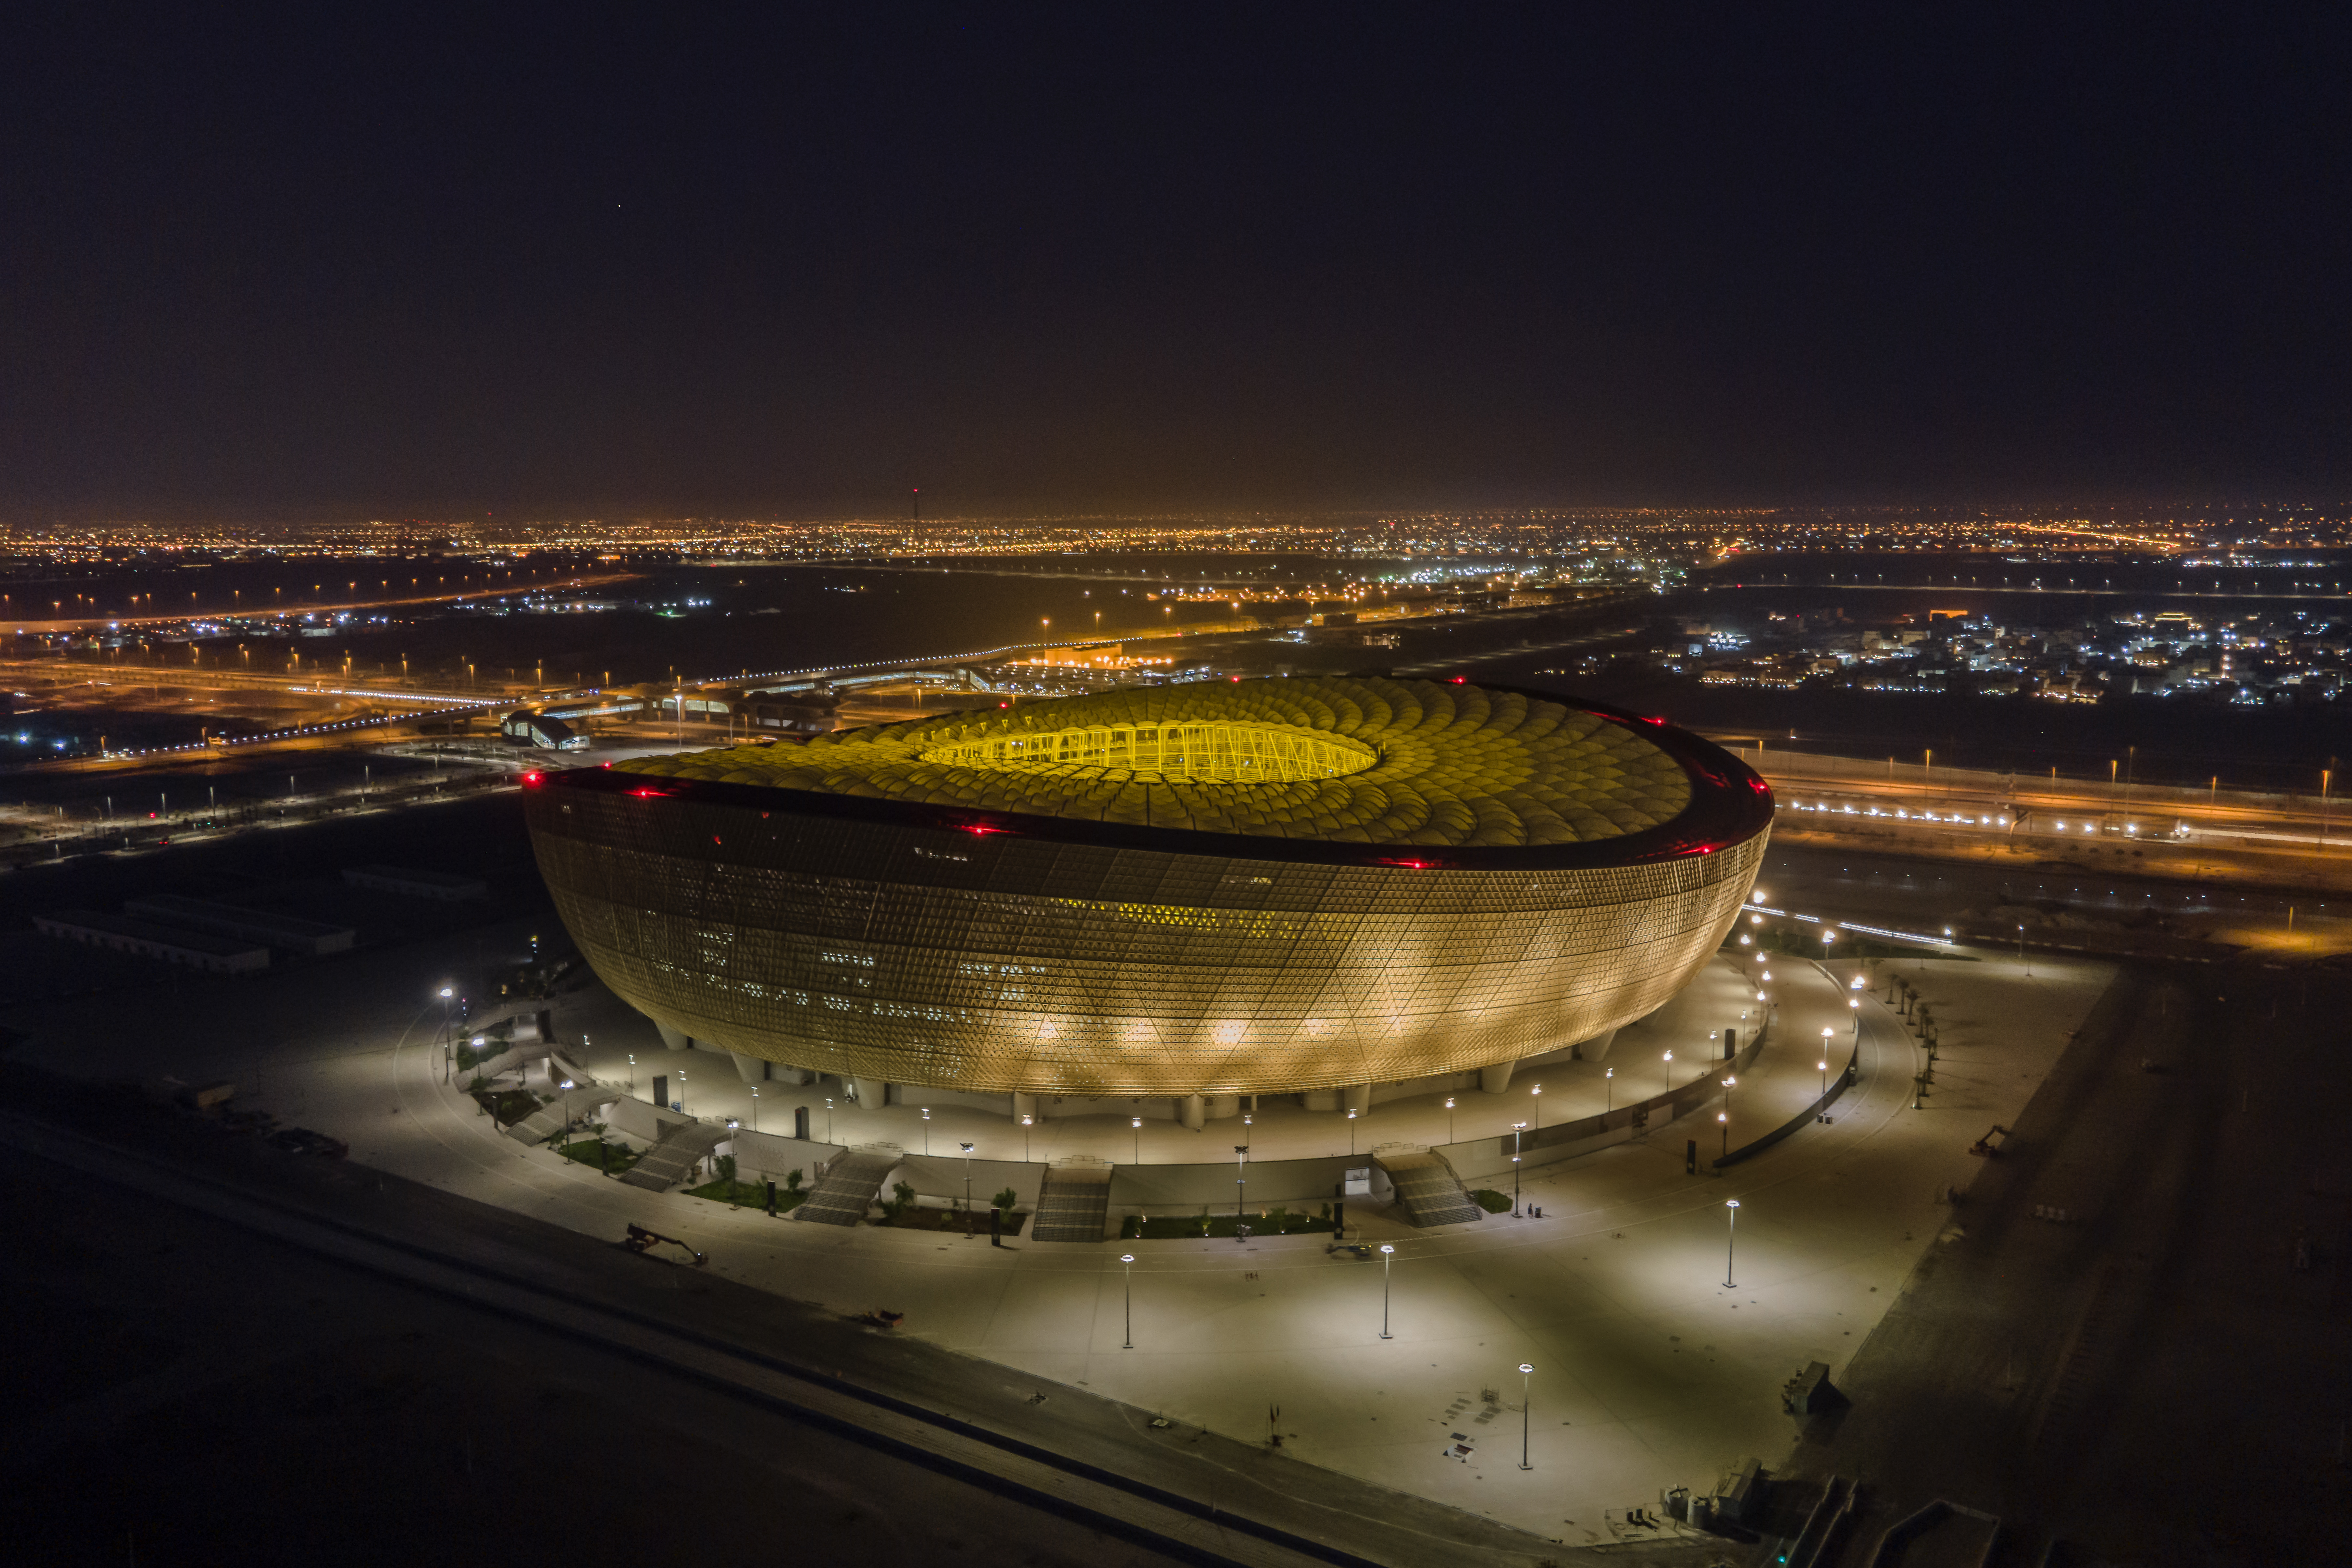 Cât costă biletul de ospitalitate la semifinalele și finala Cupei Mondiale + Imagini spectaculoase cu cele 8 stadioane